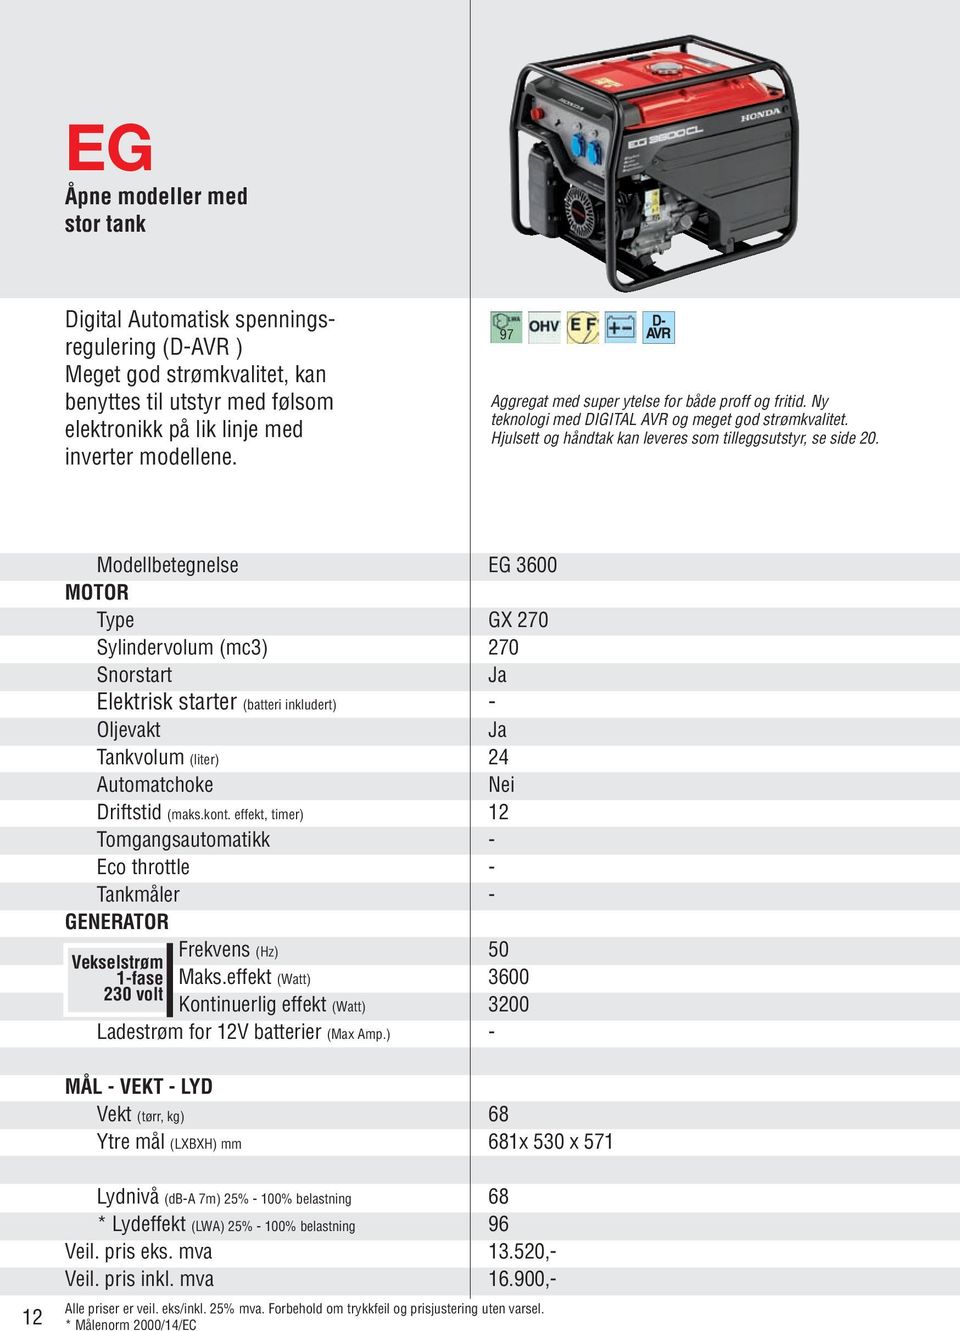 Modellbetegnelse EG 3600 MOTOR Type GX 270 Sylindervolum (mc3) 270 Snorstart Elektrisk starter (batteri inkludert) - Oljevakt Tankvolum (liter) 24 Automatchoke Nei Driftstid (maks.kont.